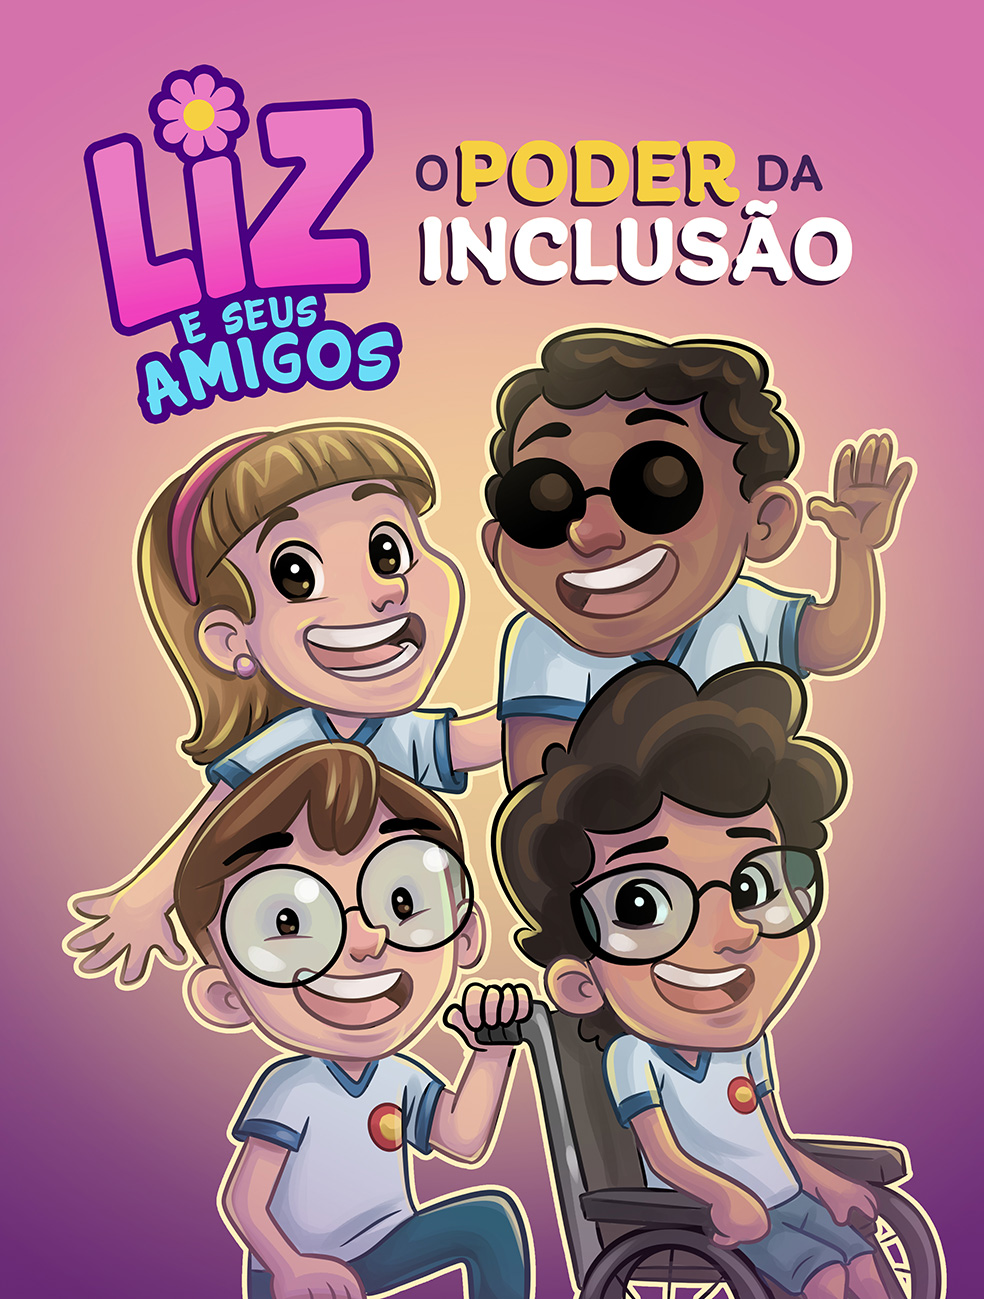 Ilustração da capa do livro Liz e seus amigos, o Poder da Inclusão